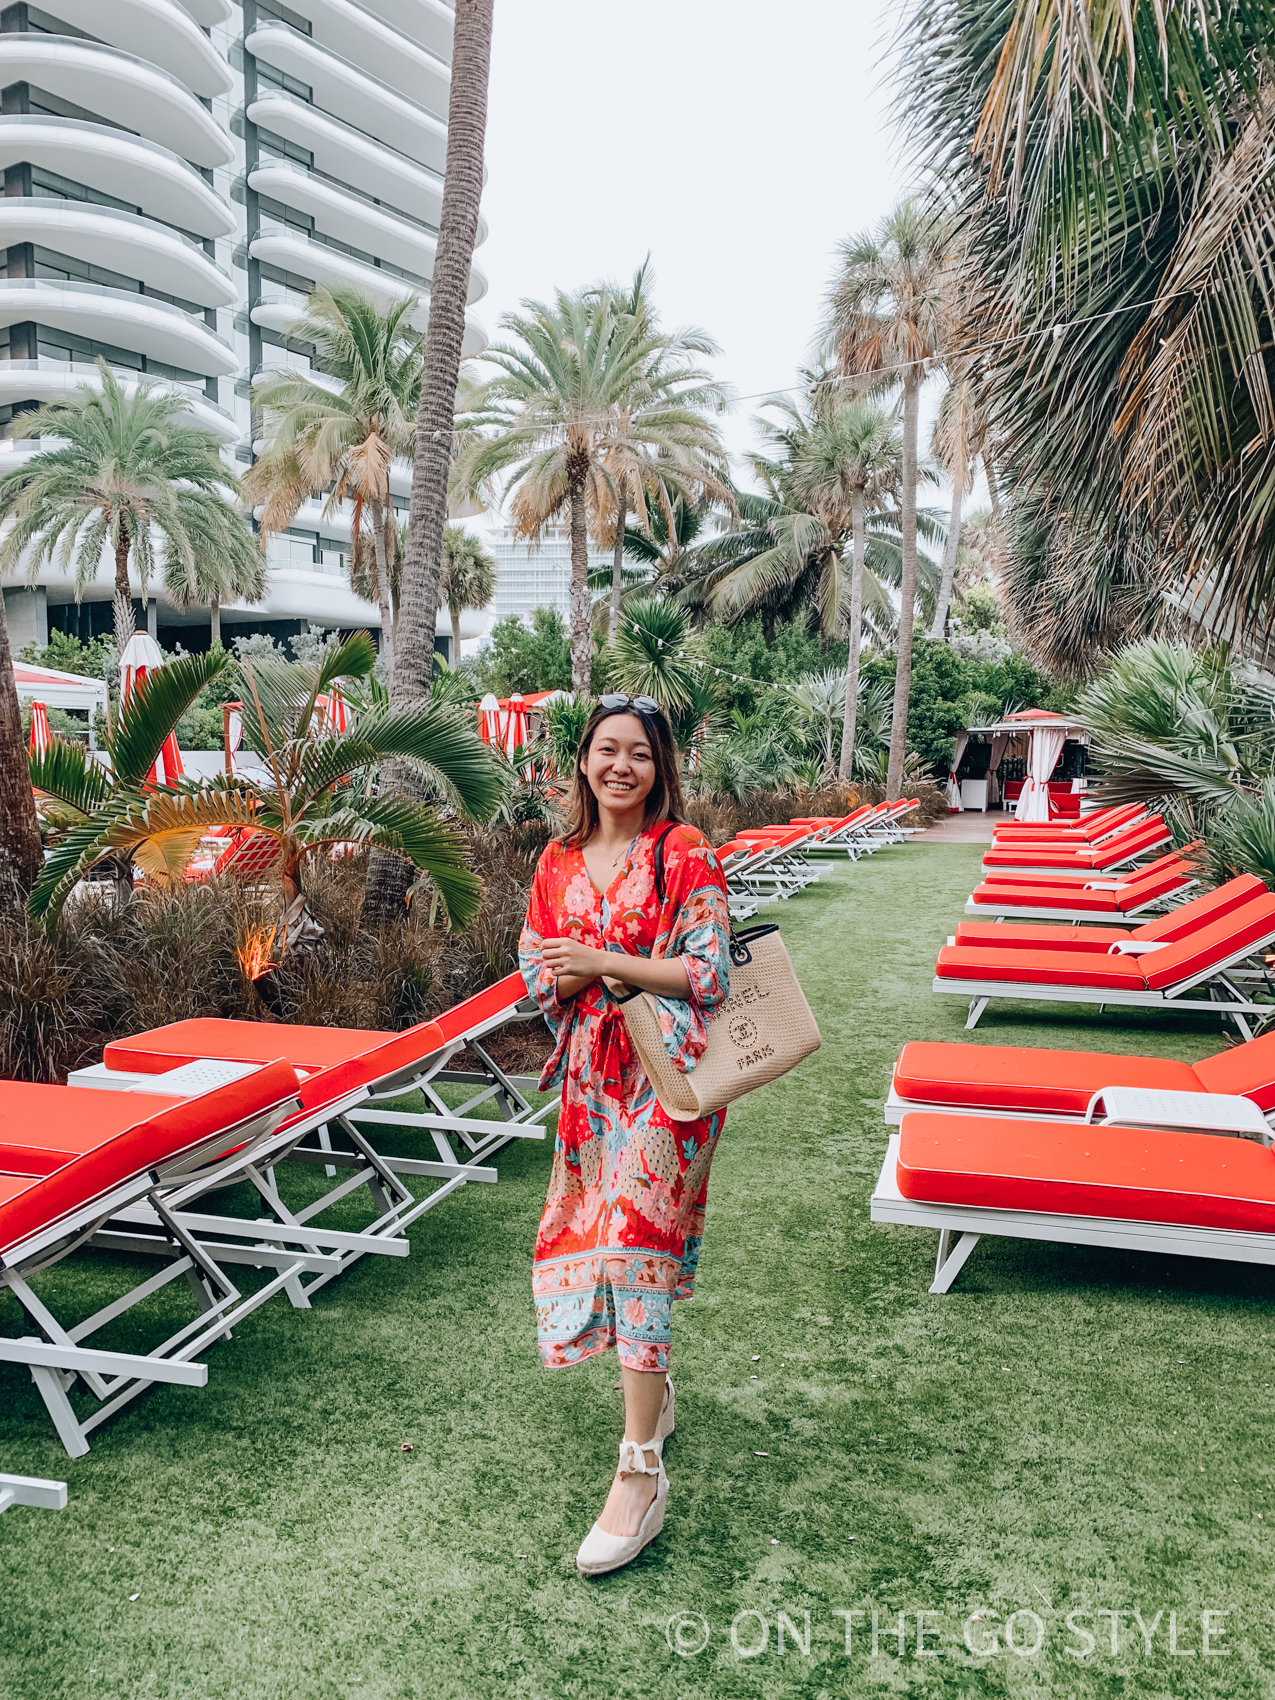 Faena Miami poolside palm trees and umbrellas - Chanel raffia Deauville tote